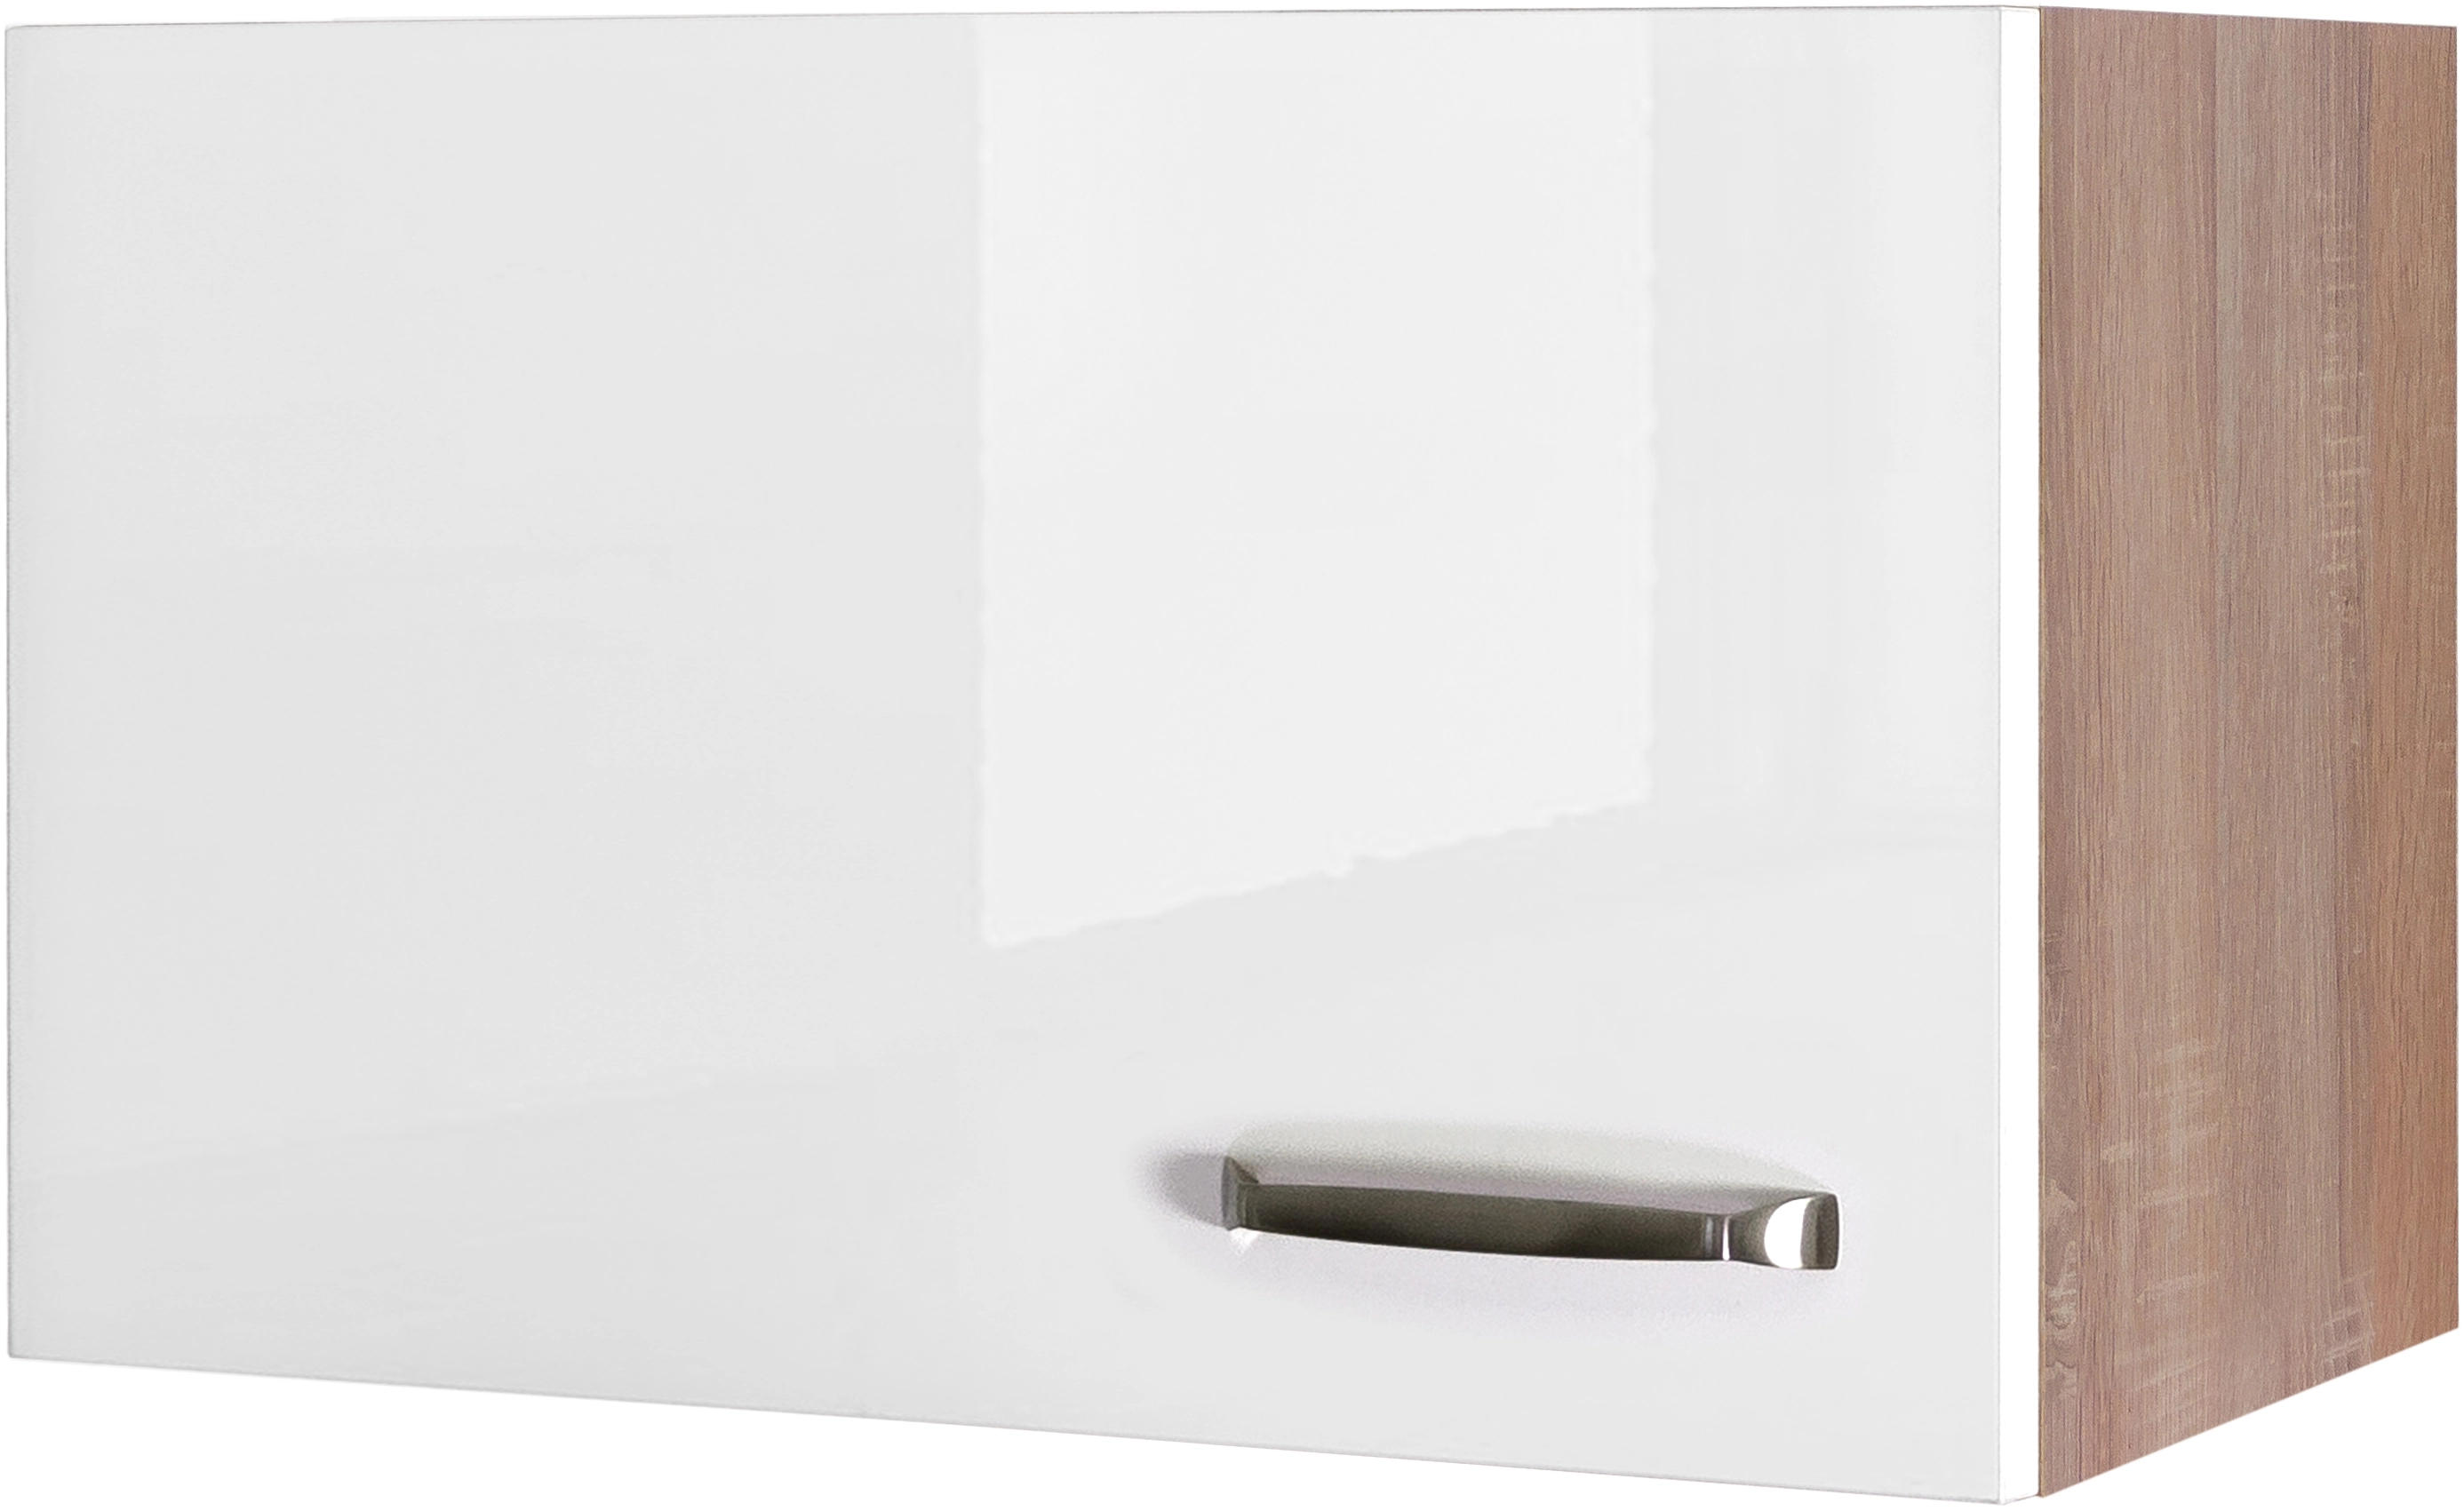 OBI 60 cm Kurz-Hängeschrank Exclusiv Weiß Flex-Well Hochglanz kaufen x 32 Valero bei cm